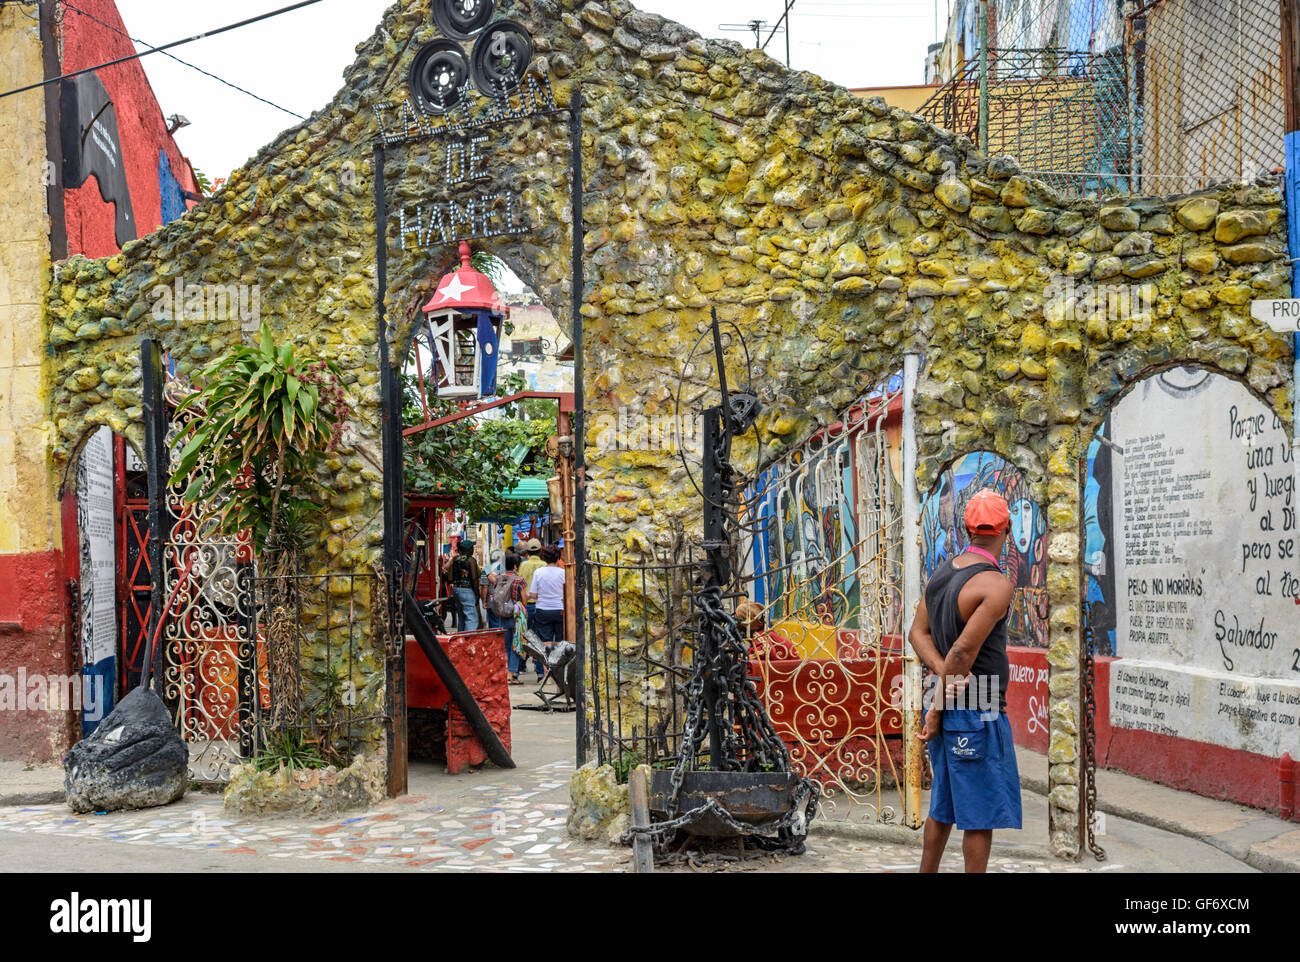 Le célèbre art project à Callejon de Hamel, au centre de La Havane (Centro Habana), La Havane, Cuba Banque D'Images